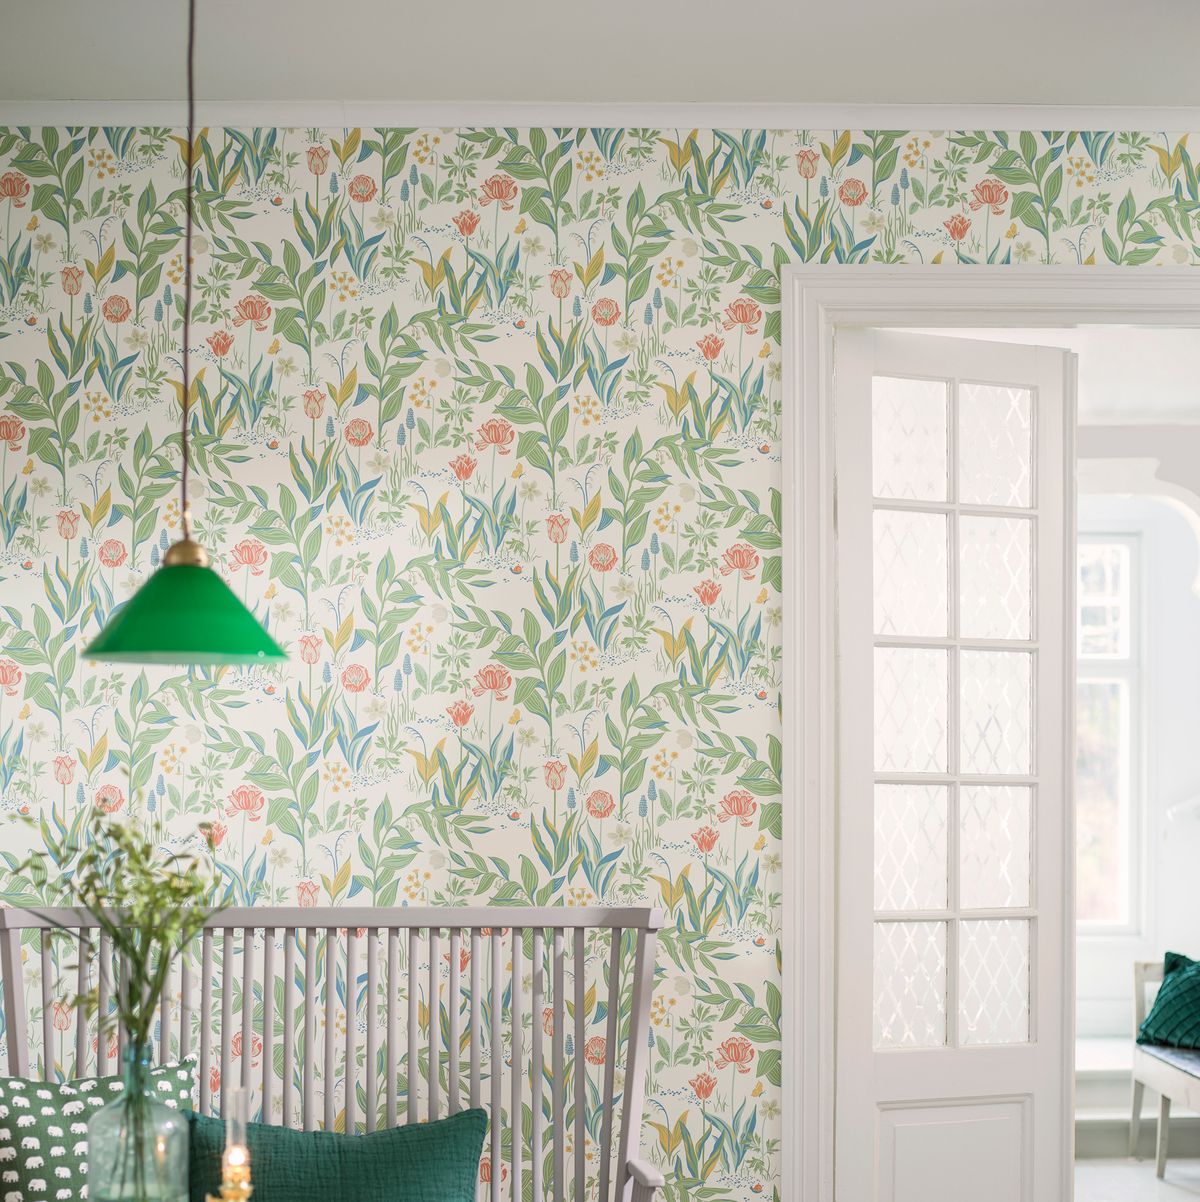 Más de 60 ideas para decorar las paredes con papel pintado